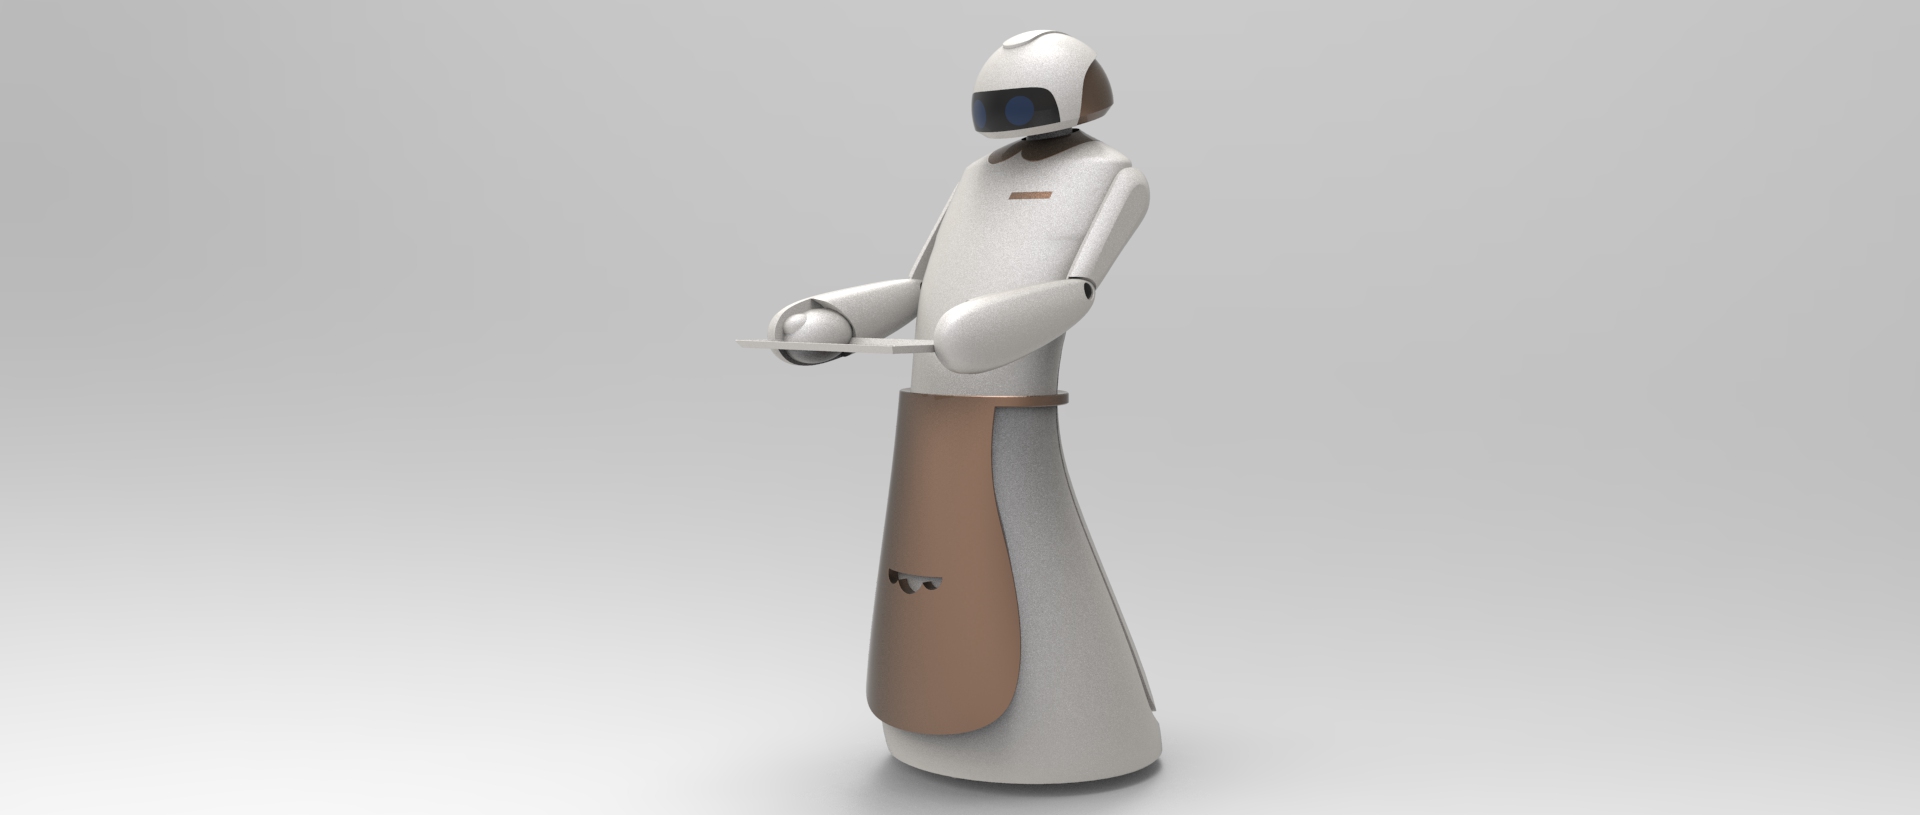 智能送餐服务机器人